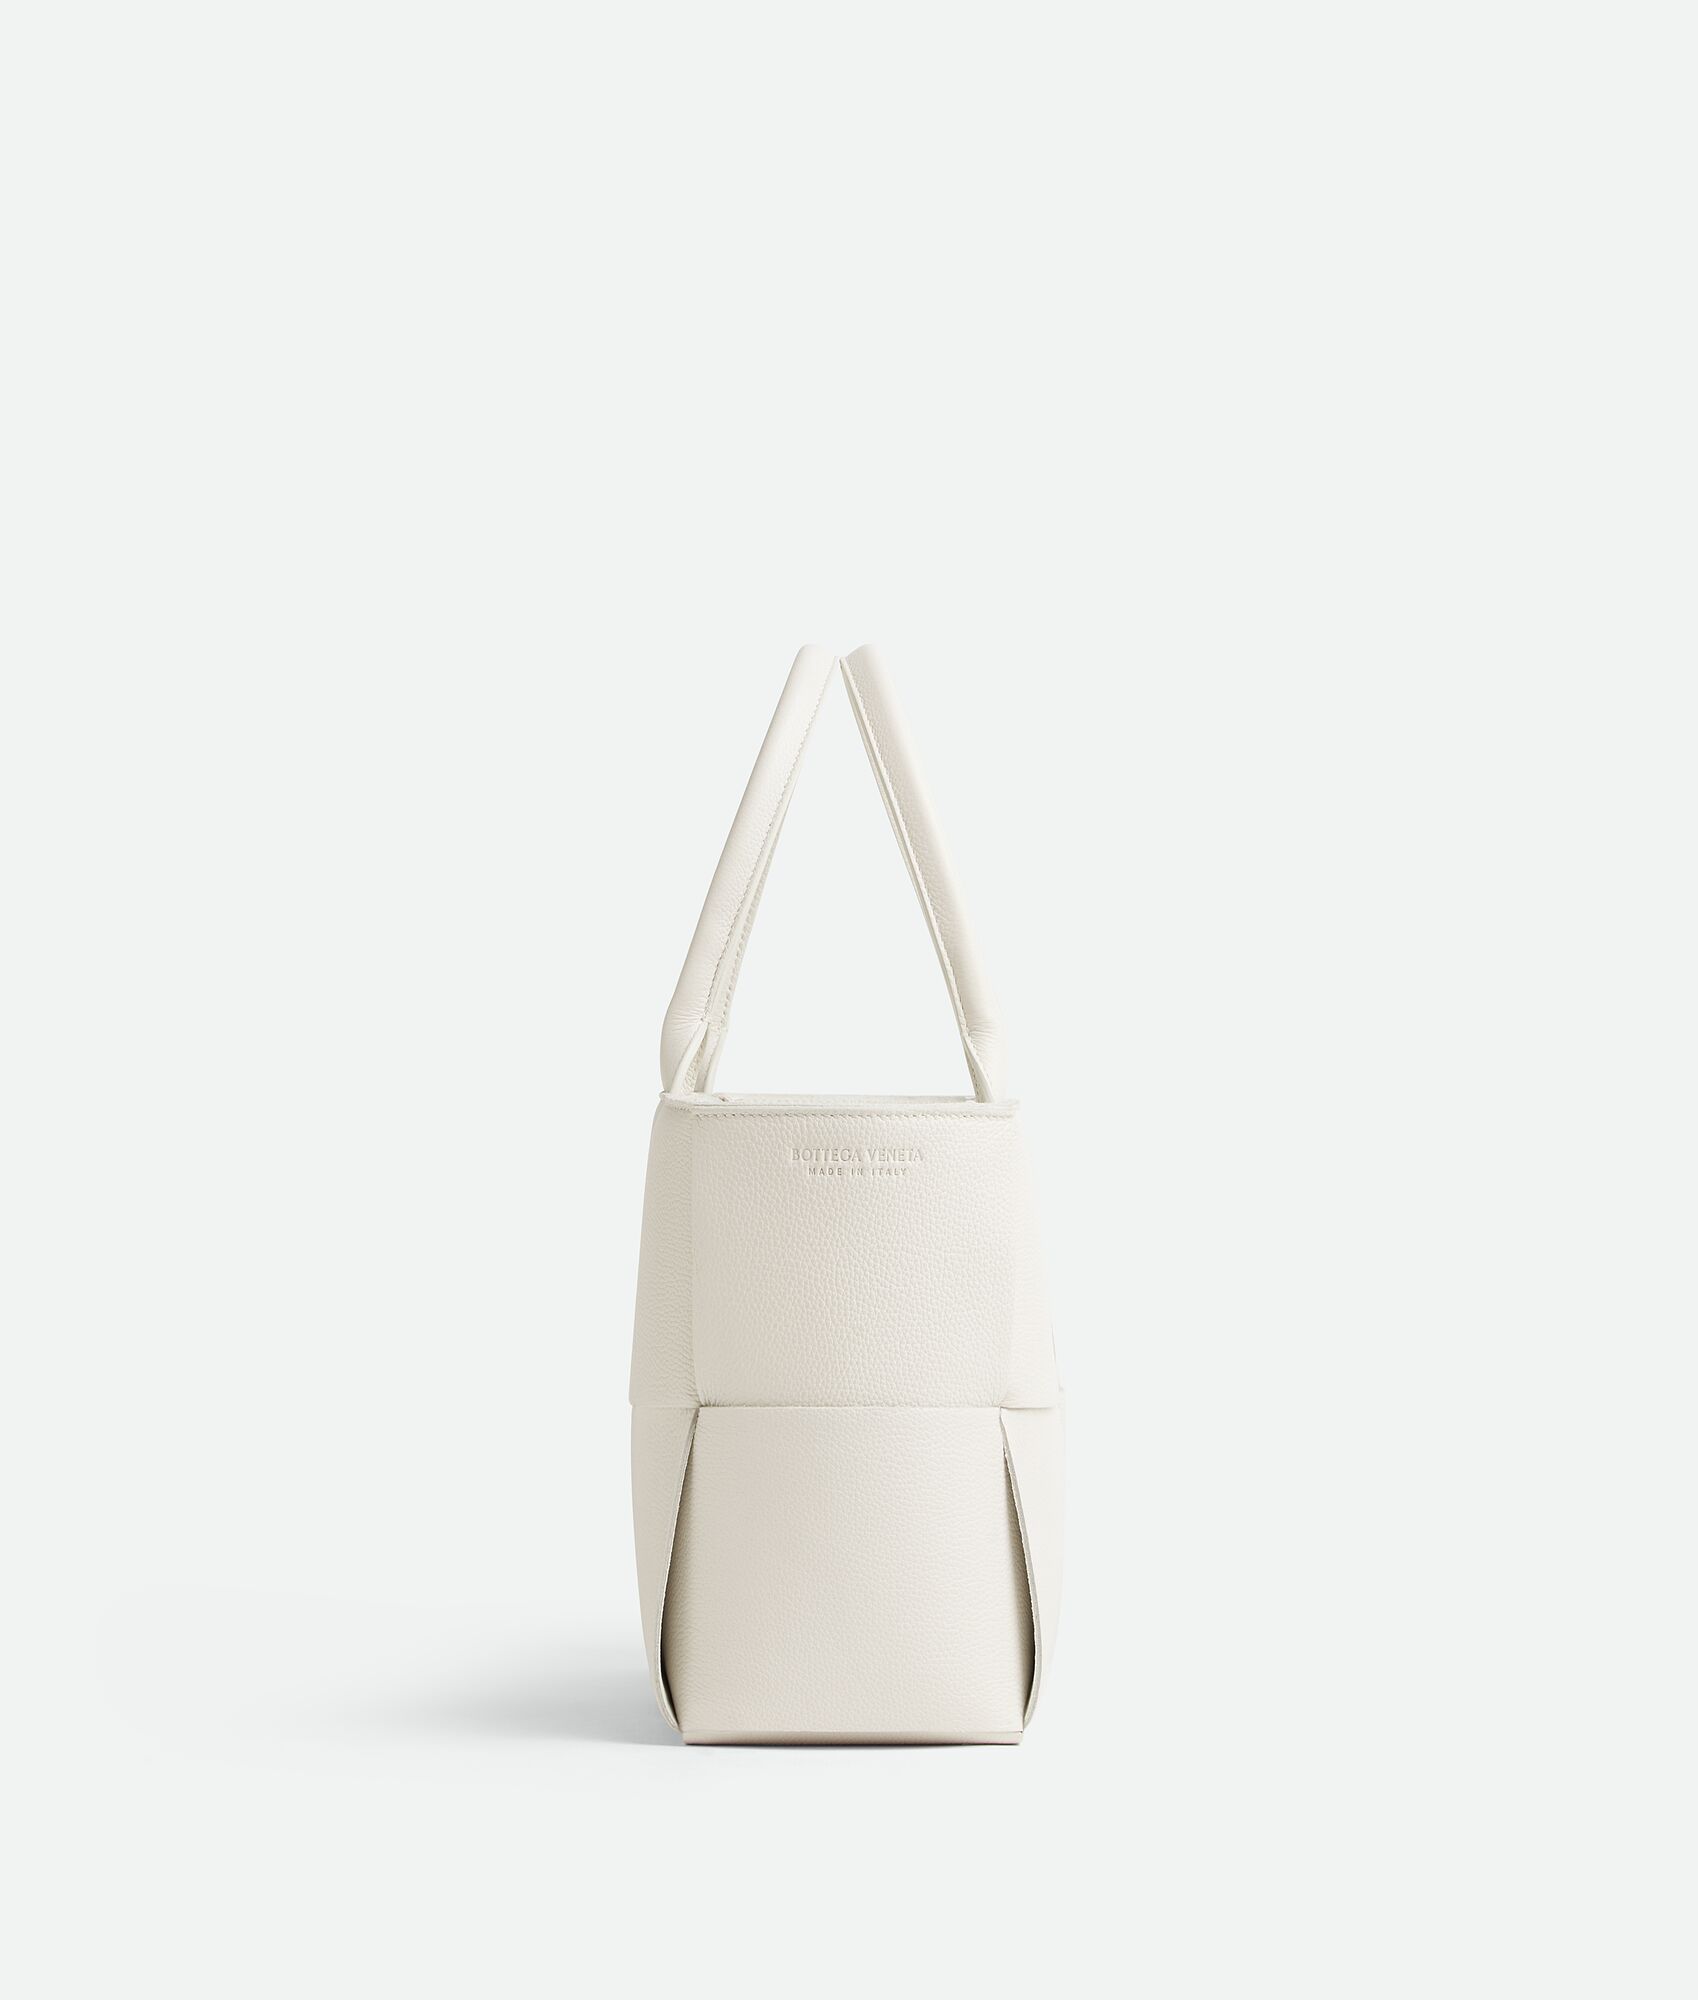 Bottega Veneta® Small Arco Tote Bag in White. Shop online now.